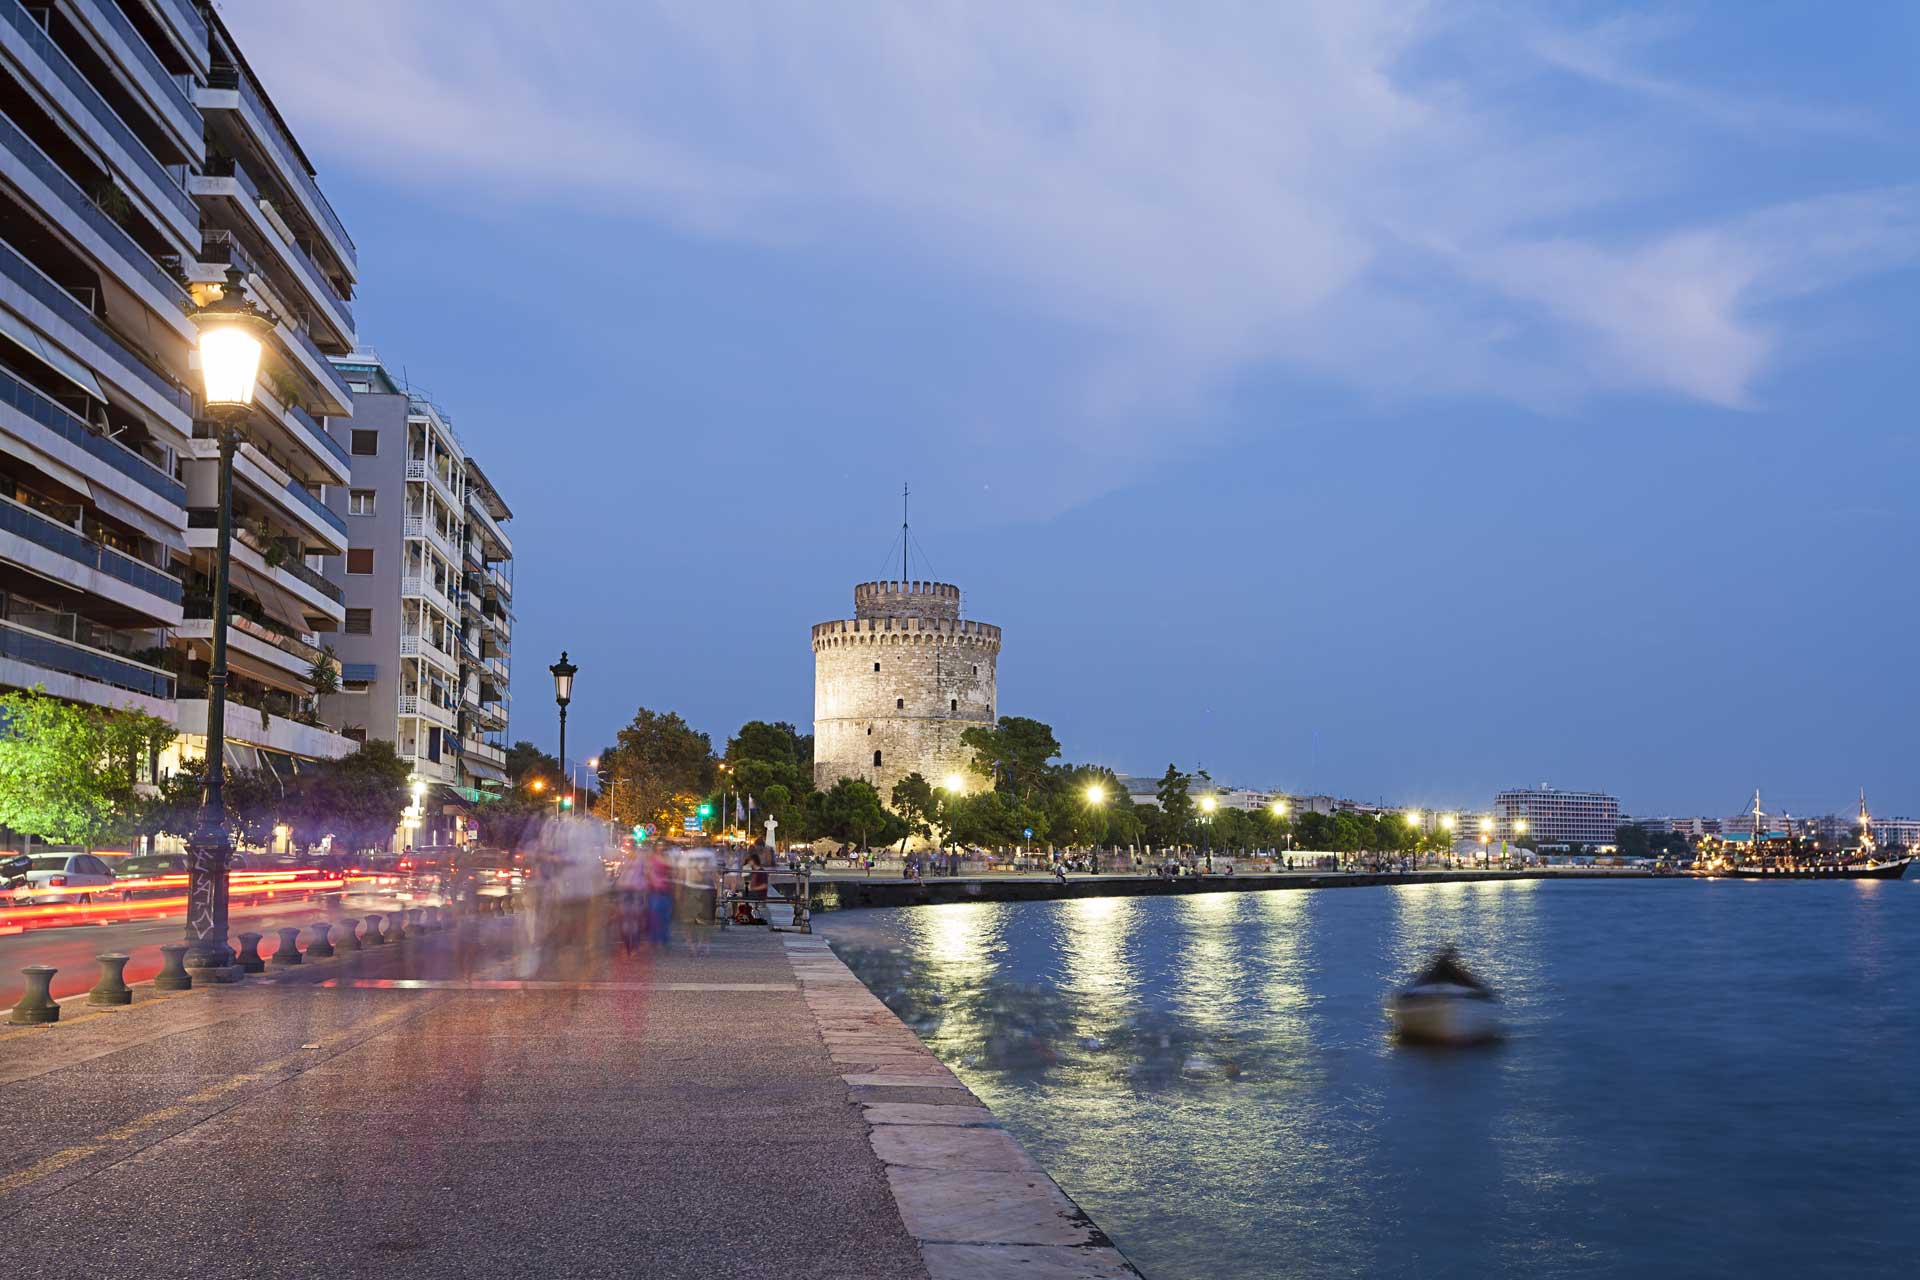 Έτσι ήταν η Θεσσαλονίκη κατά την αρχαιότητα – Πλούσιο φωτογραφικό υλικό!